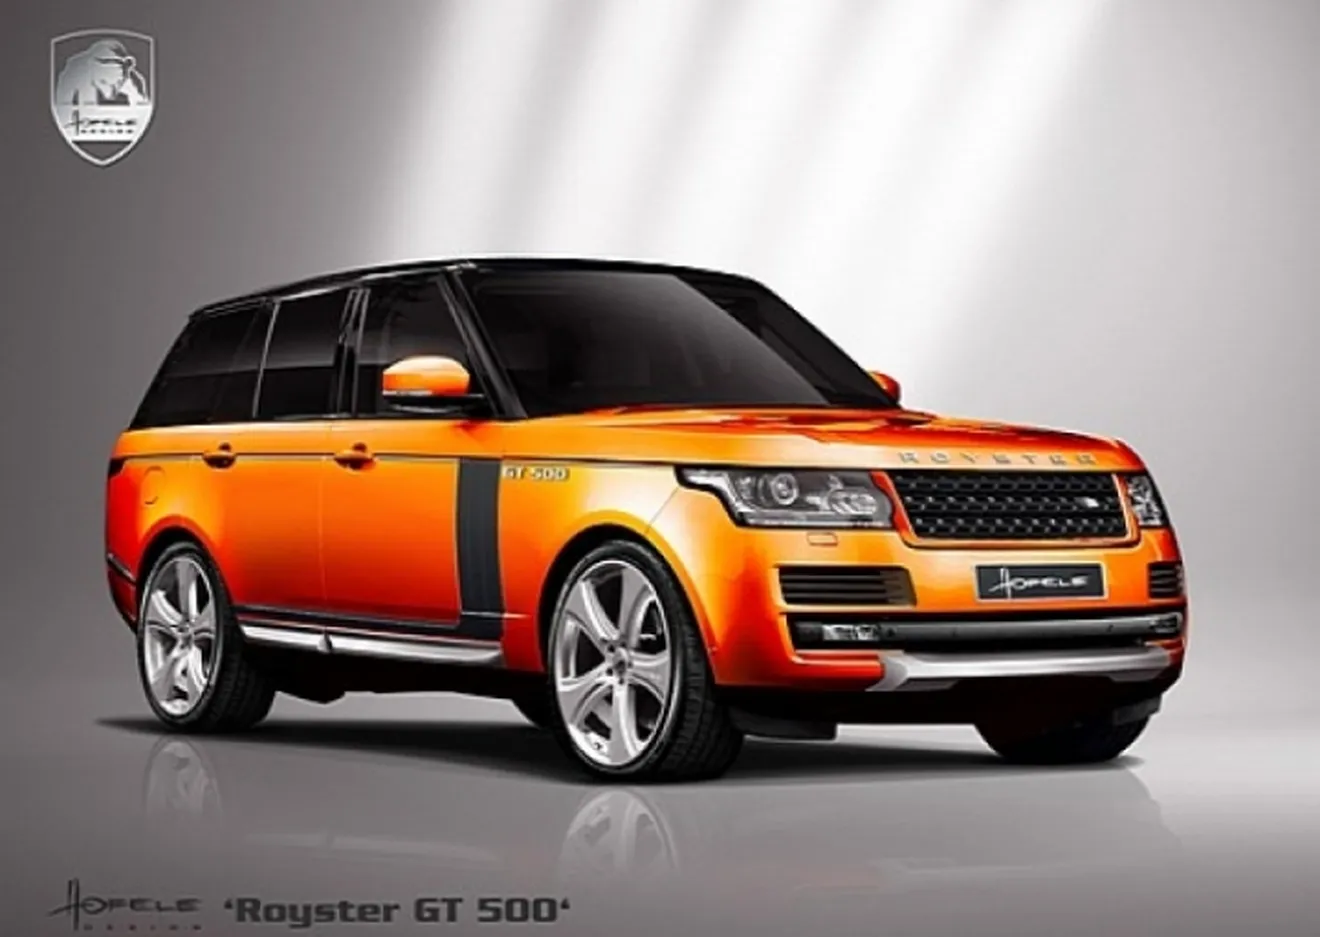 Hofele Design enseña su preparación del Range Rover 2013